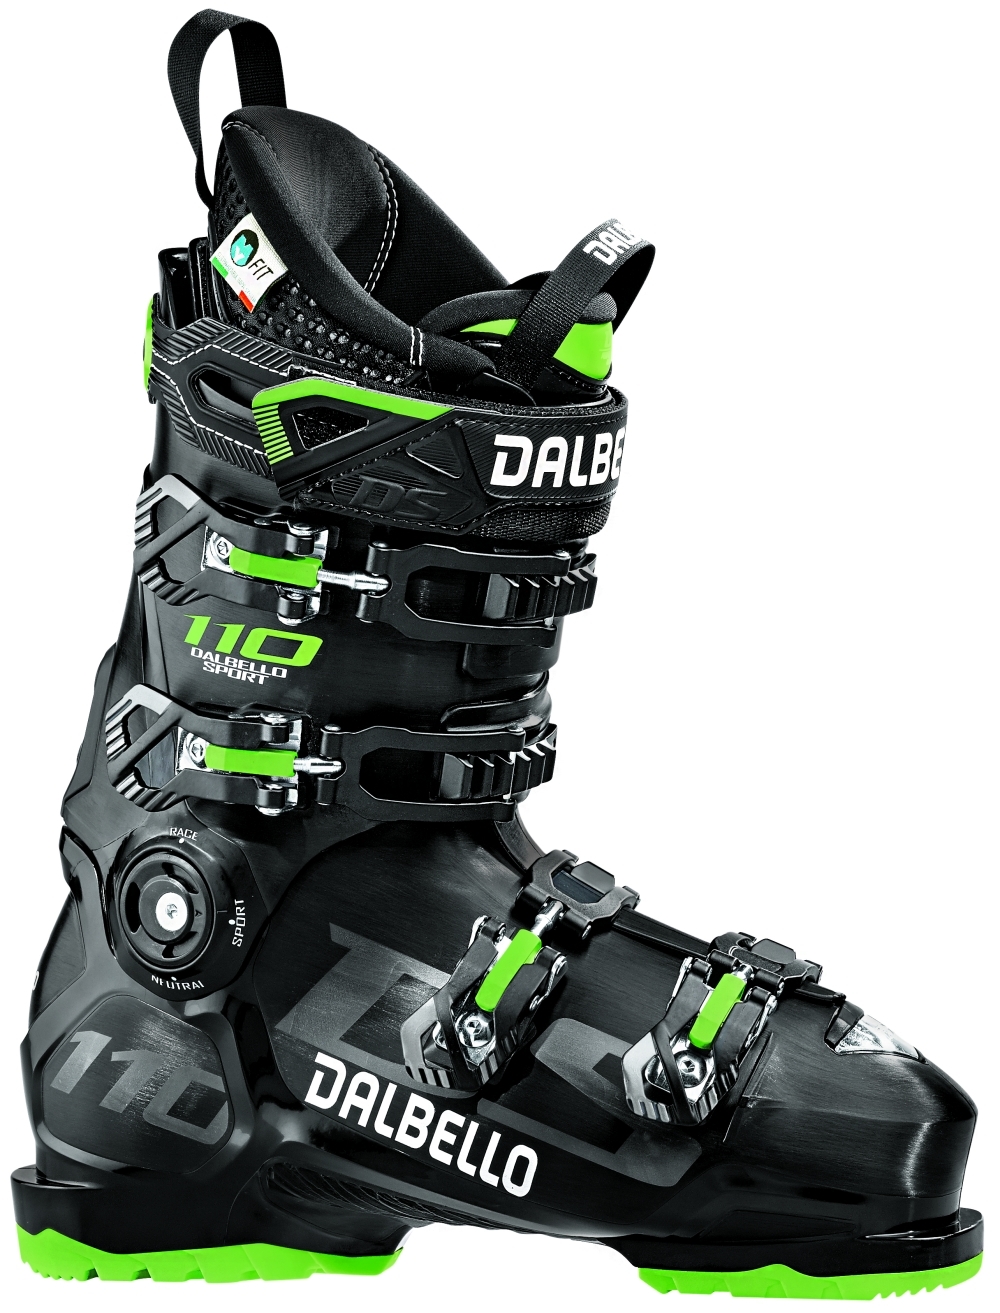 Dalbello buty narciarskie męskie DS 110 